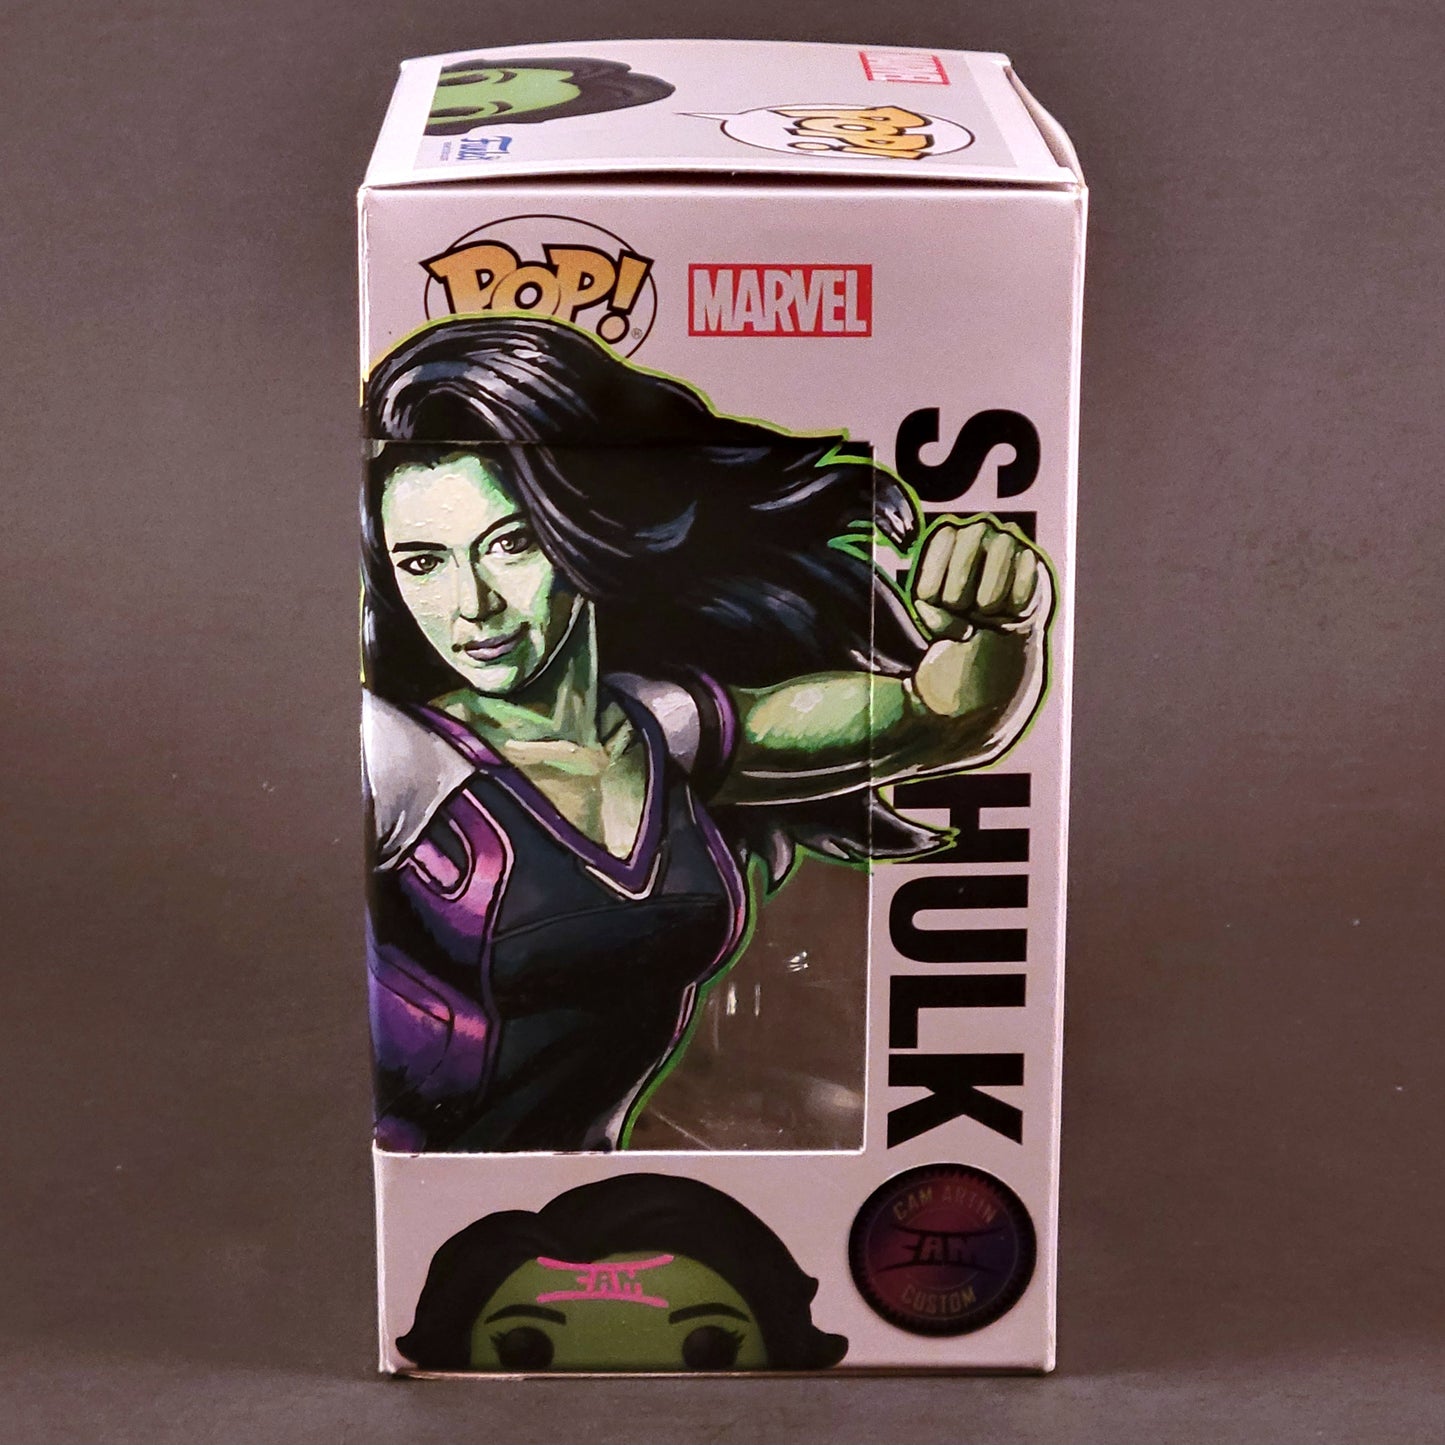 She-Hulk [JUN'23]